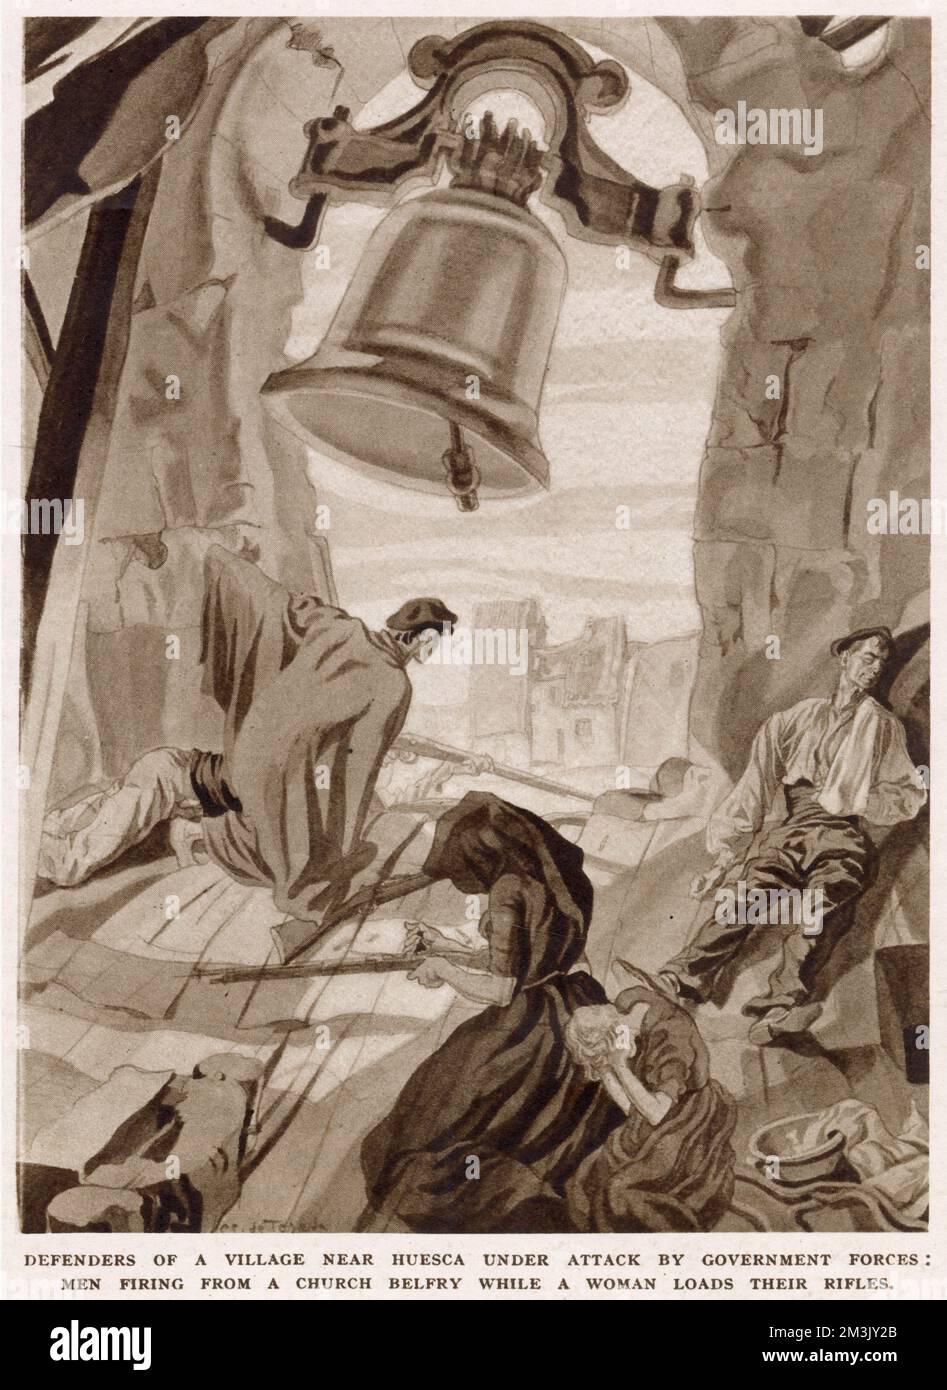 Dos soldados nacionalistas disparando sus armas desde un campanario, con una mujer recargando sus rifles, durante la Guerra Civil Española, 1937. Esta ilustración fue hecha por un partidario nacionalista en un pueblo cerca de Huesca. Foto de stock